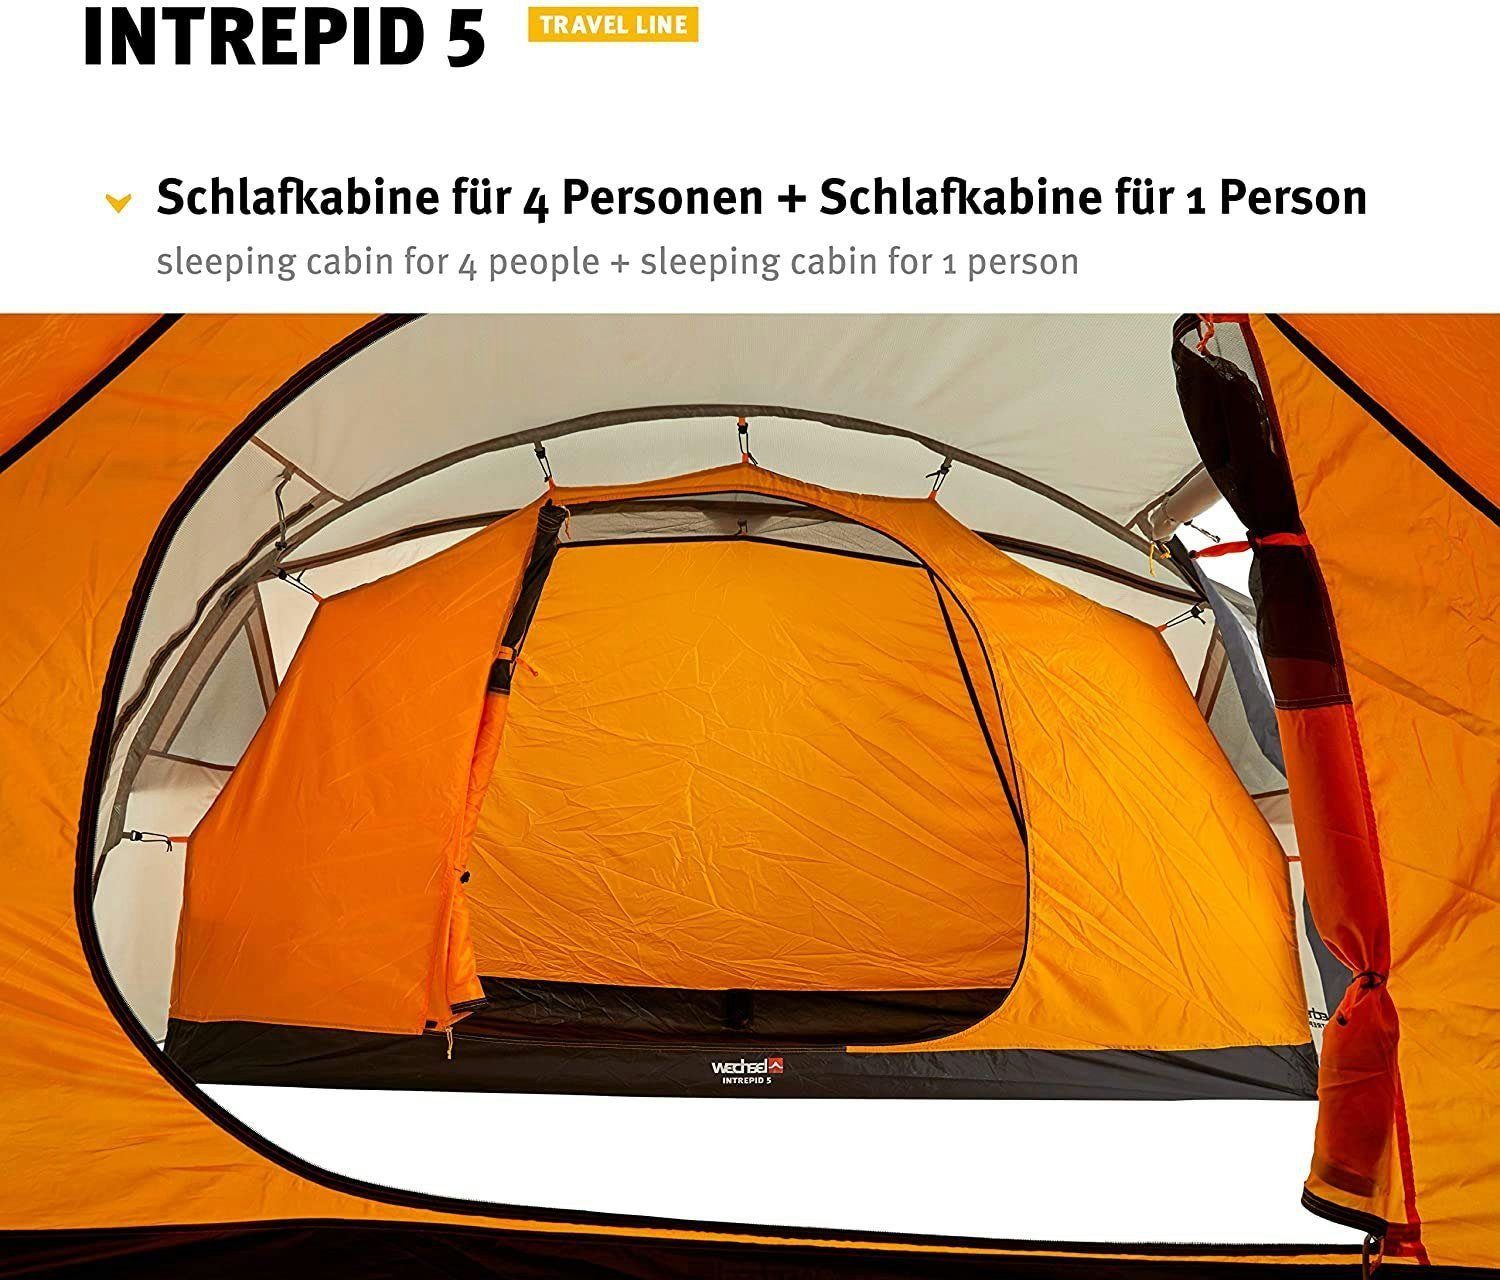 5 5 Personen: Line Intrepid Tunnelzelt 5-Personen Familienzelt, Travel - - Tents Wechsel